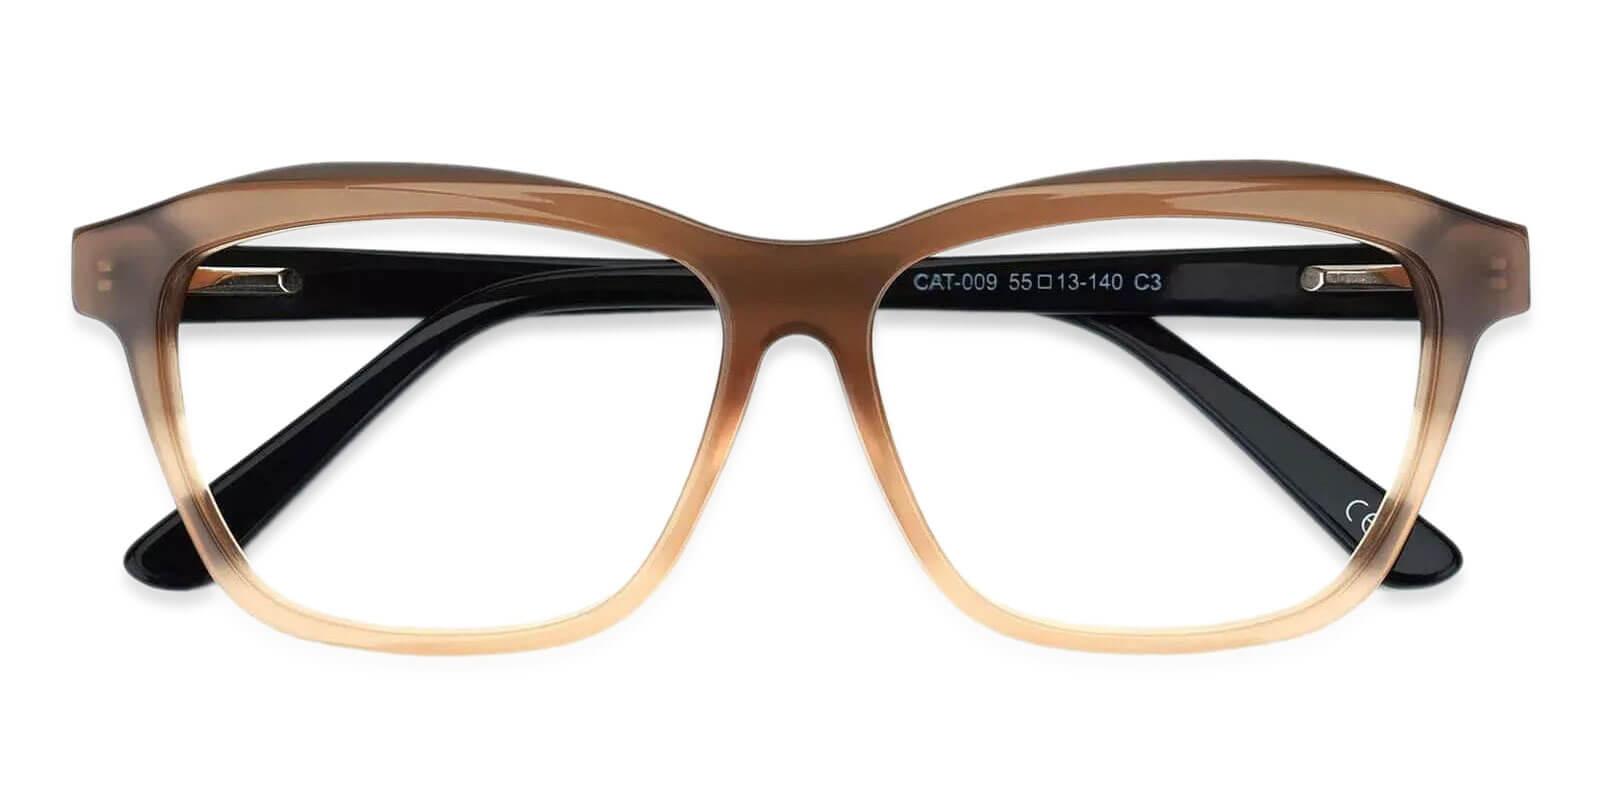 Sonia Cream Acetate Eyeglasses , SpringHinges , UniversalBridgeFit Frames from ABBE Glasses